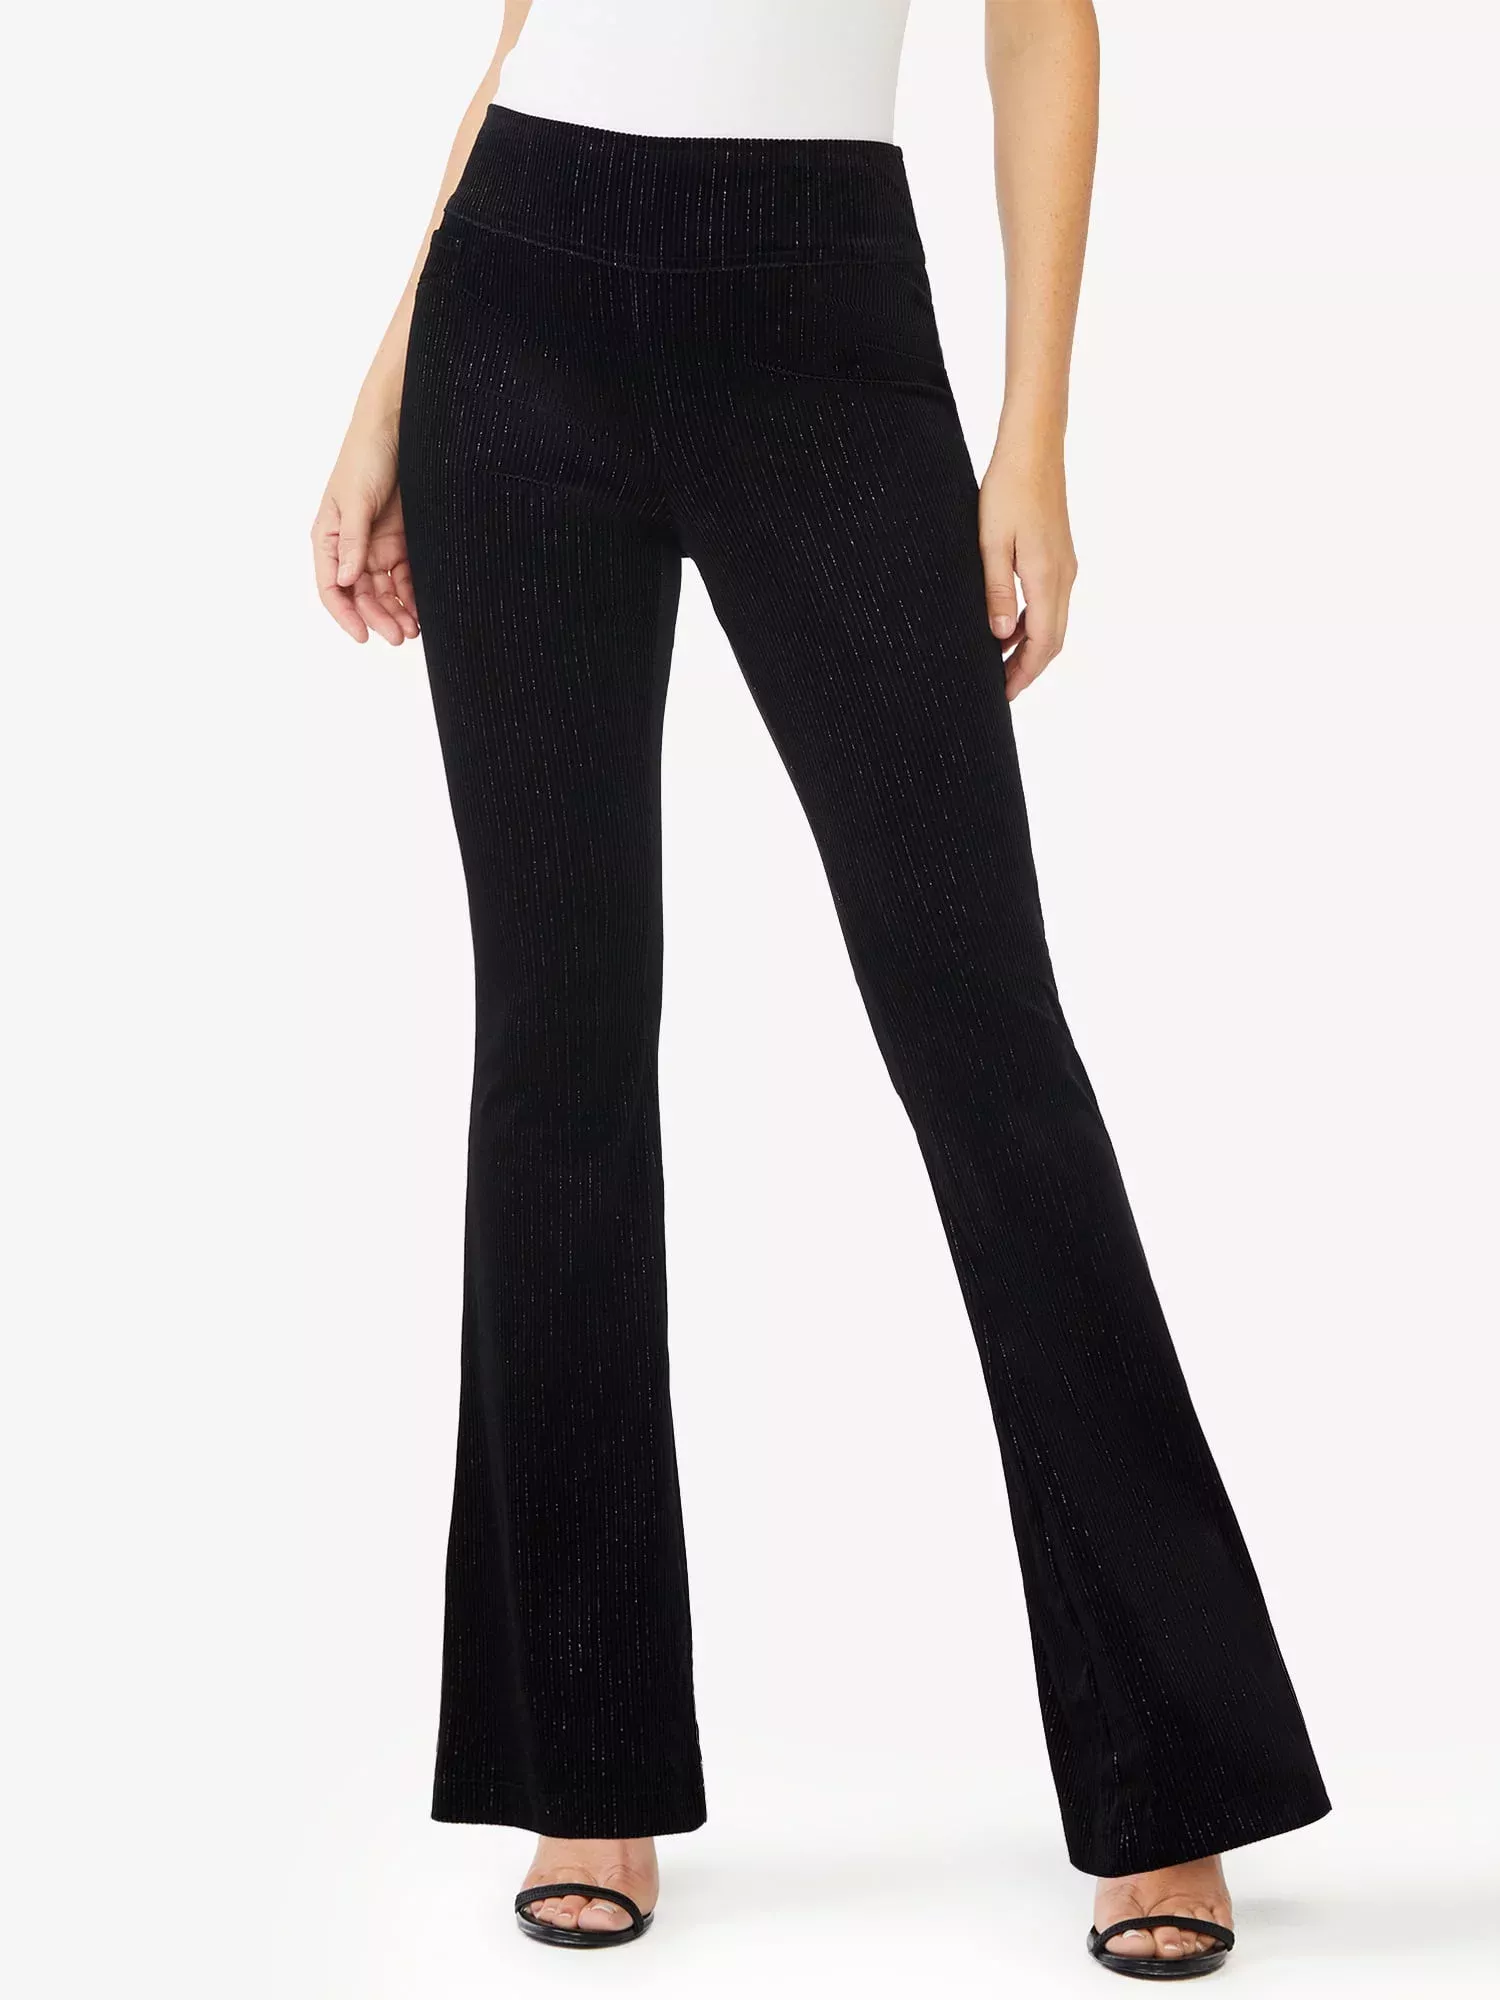 Sofia Jeans by Sofia Vergara Women's Velour Blazer with Metallic Accents 